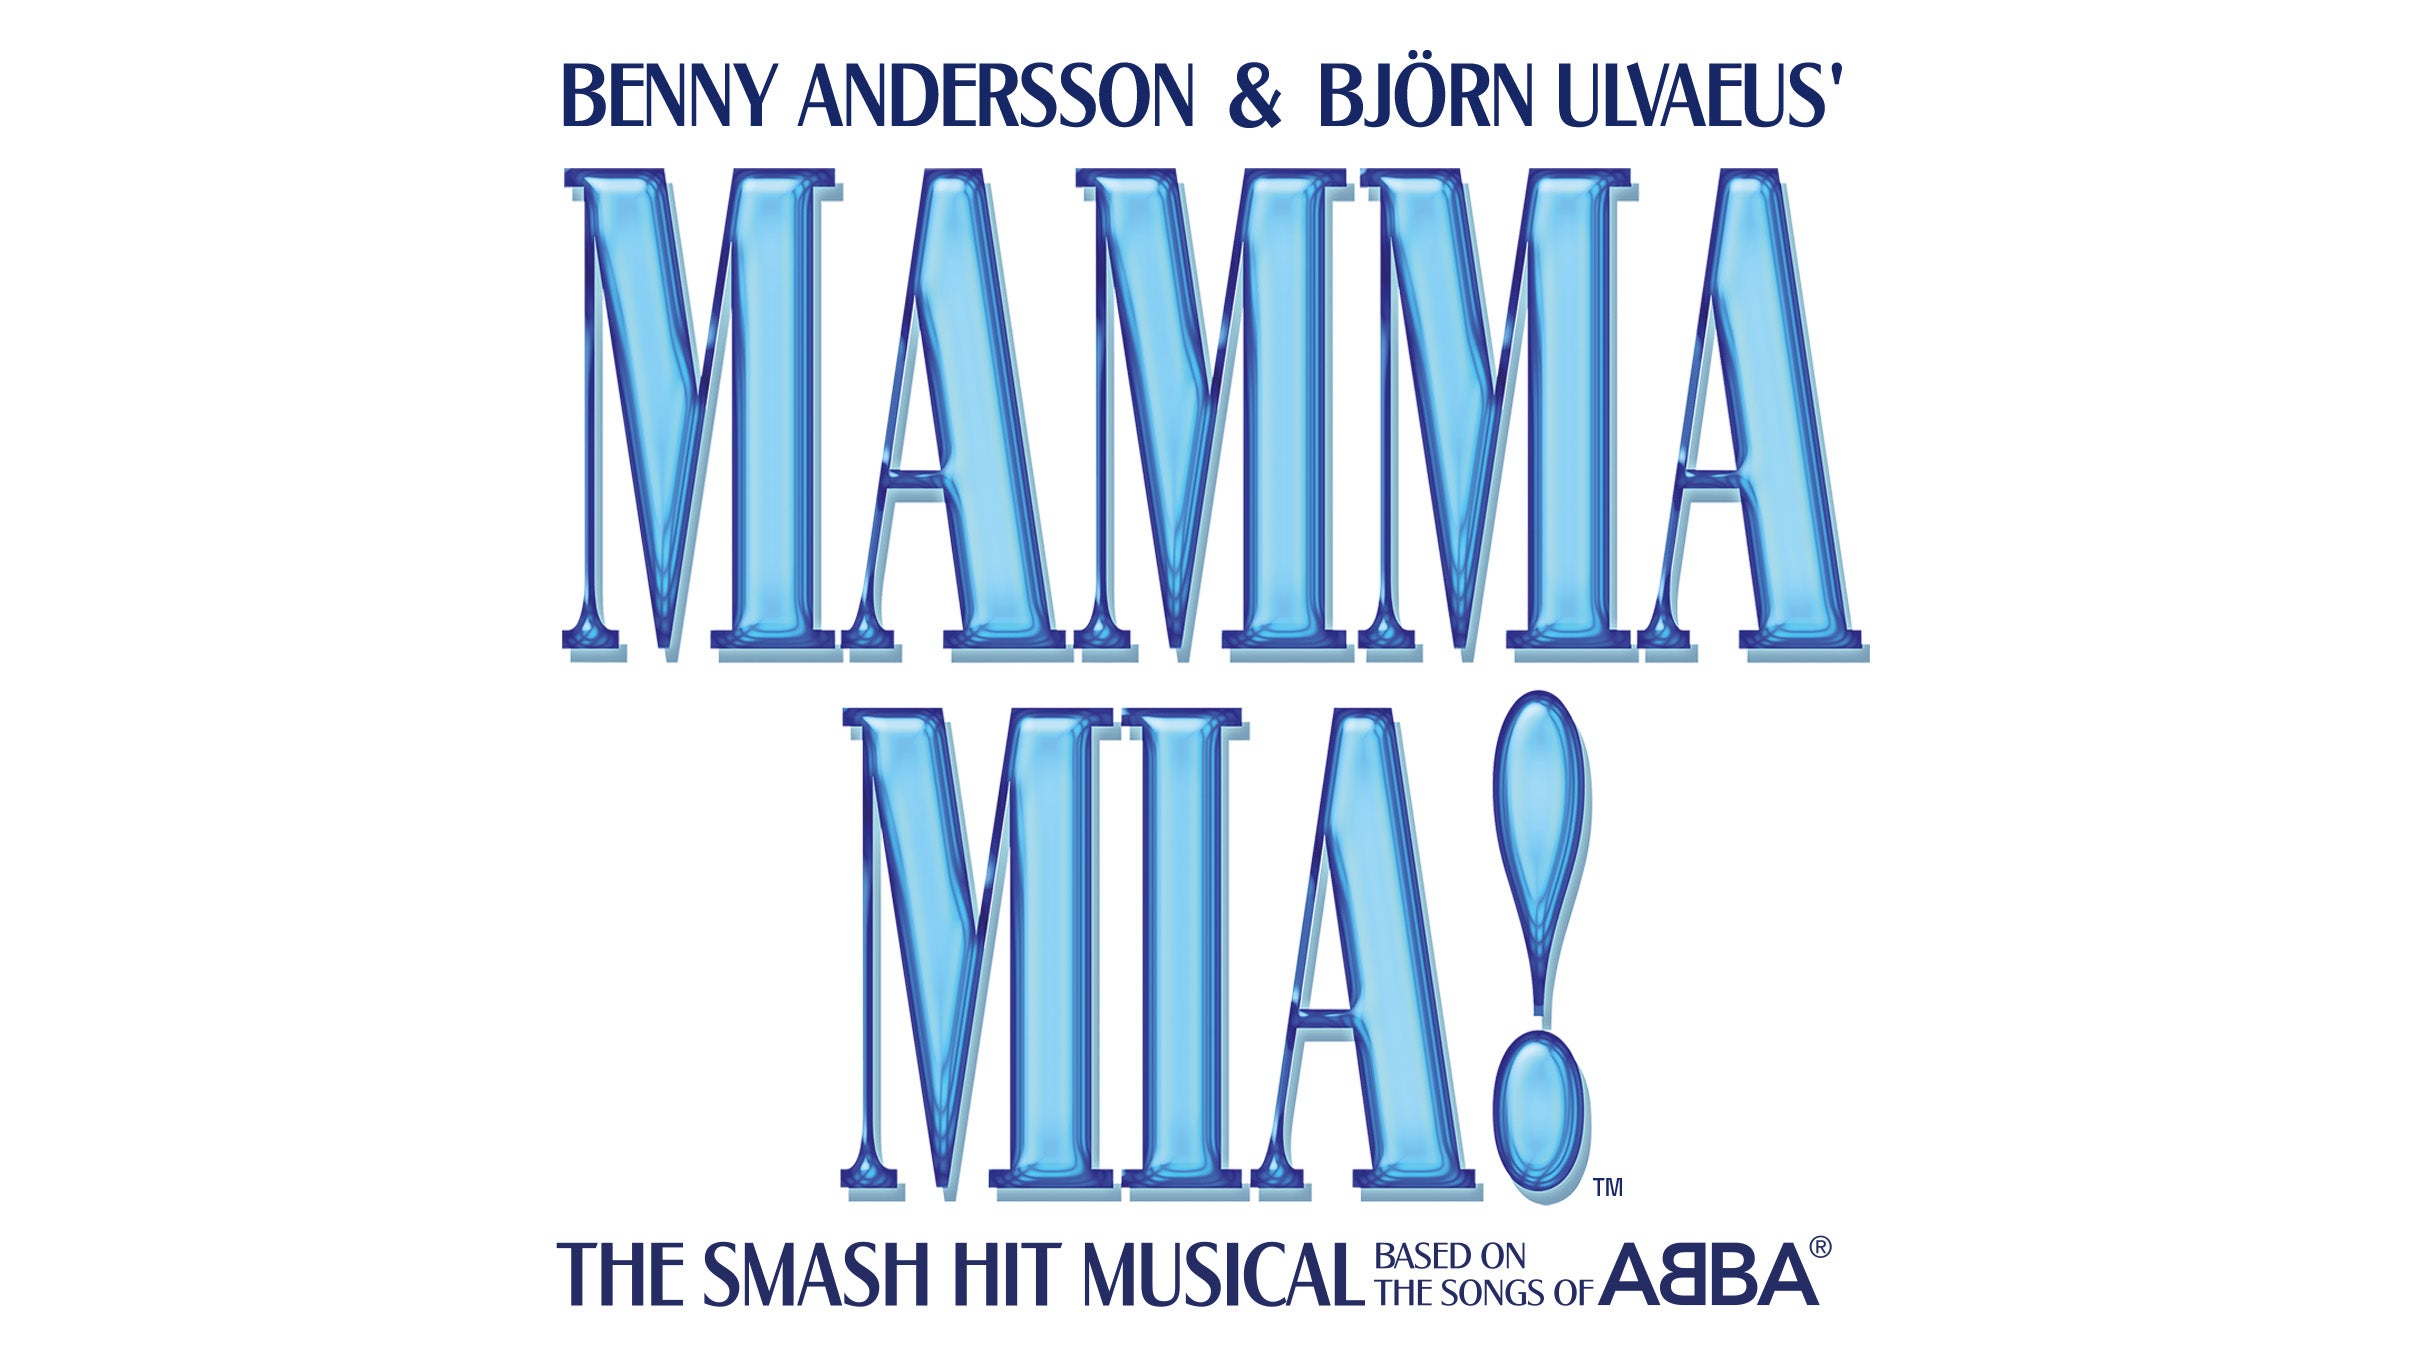 Mamma Mia! in Minneapolis event information